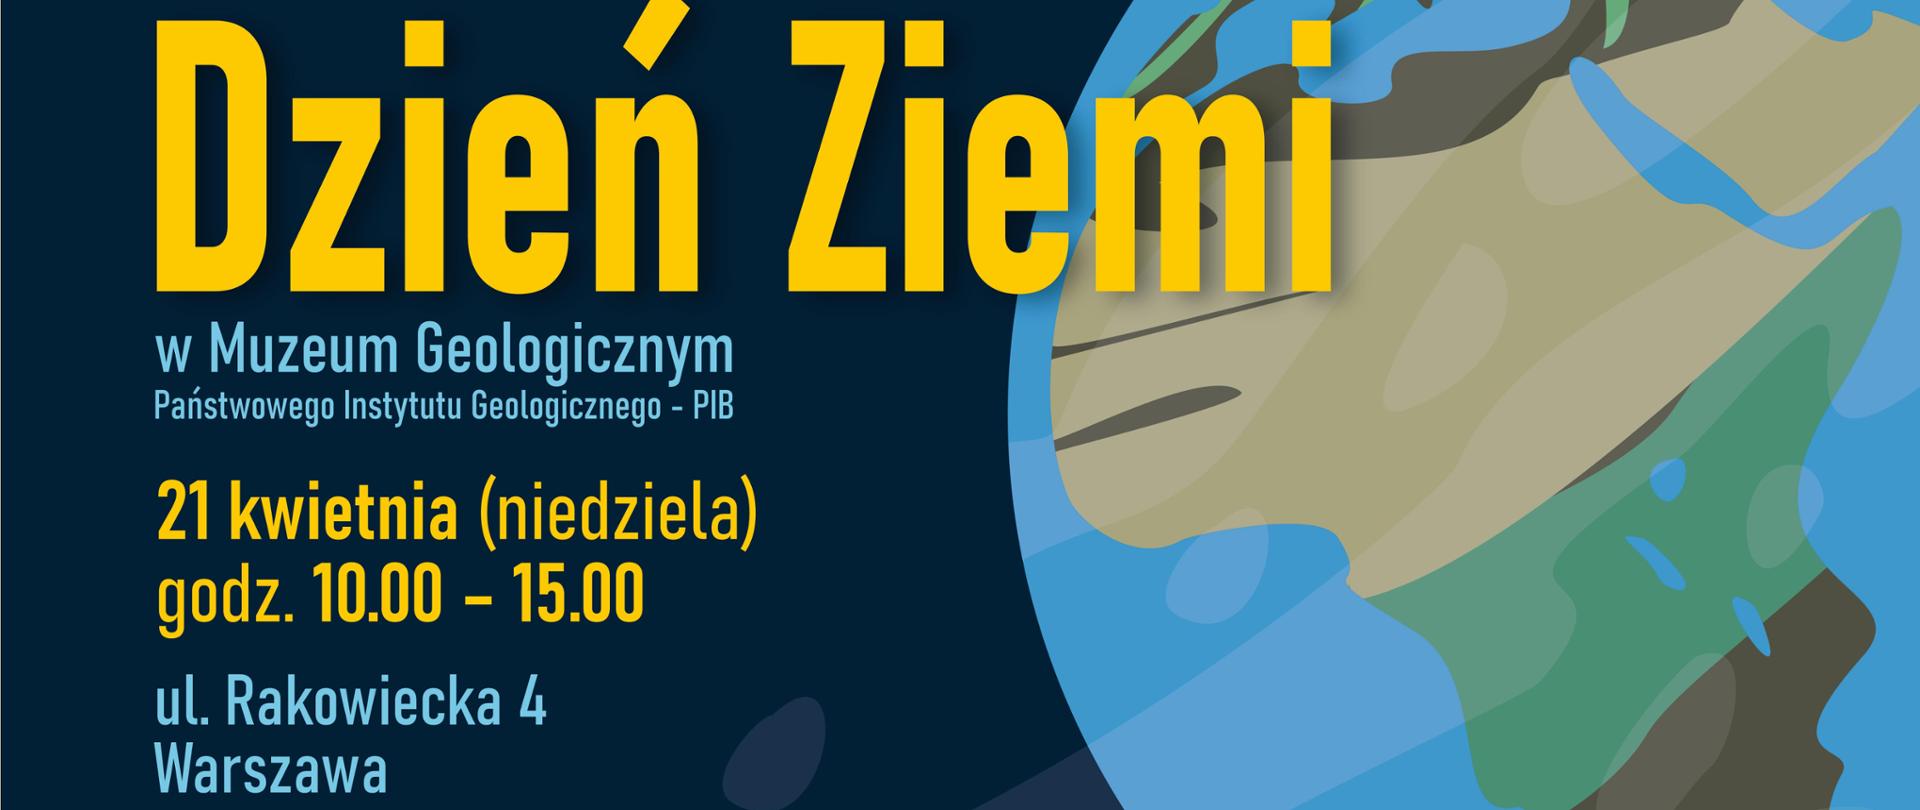 plakat z okazji Dnia Ziemi
21 kwietnia godz. 10.00-15.00 Muzeum Geologiczne Warszawa